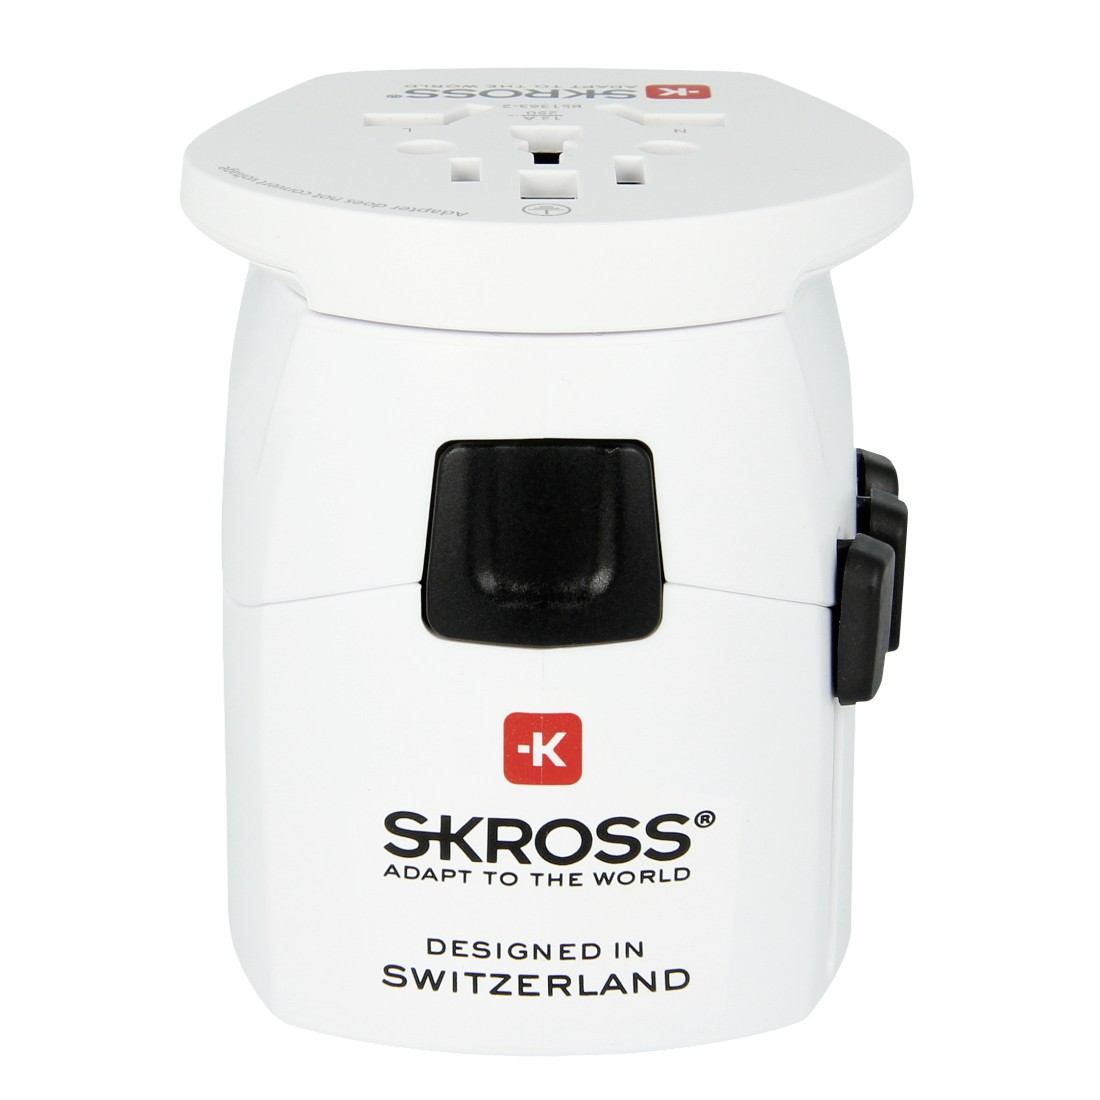 PRO SKROSS Light World Reiseadapter NA886 -